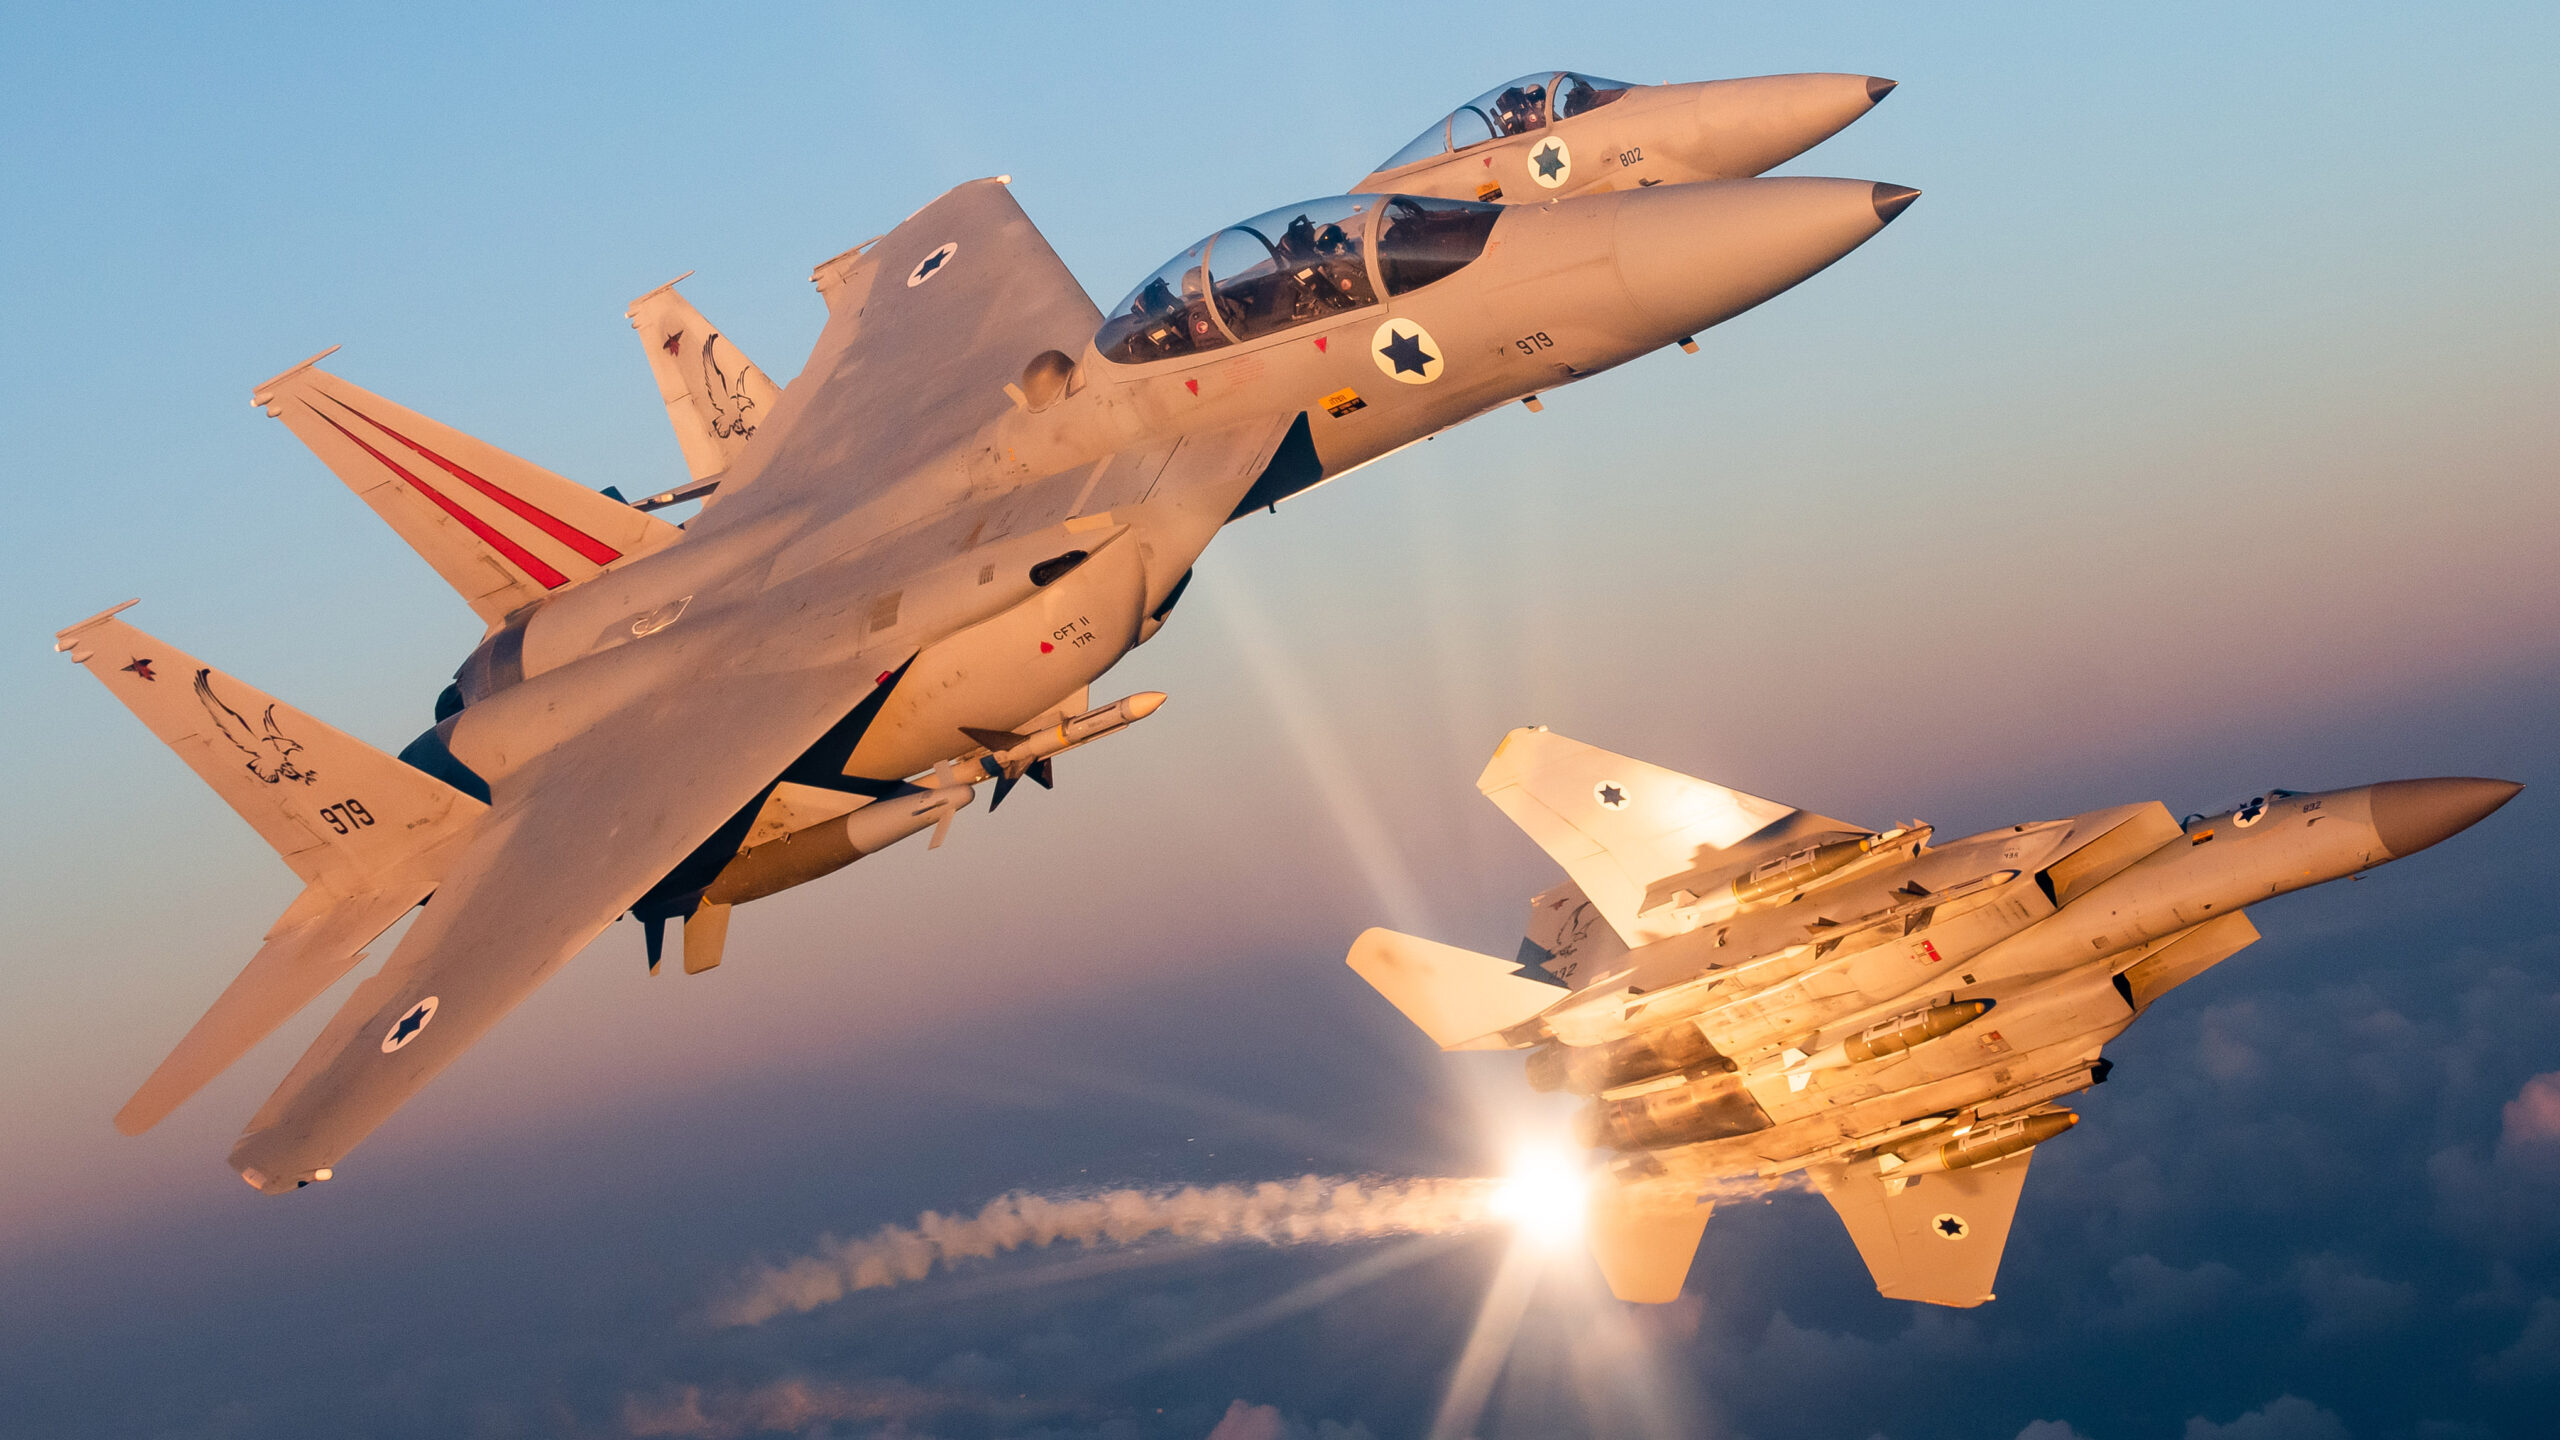 这些是我们见过的以色列F-15“Baz”鹰的最佳照片